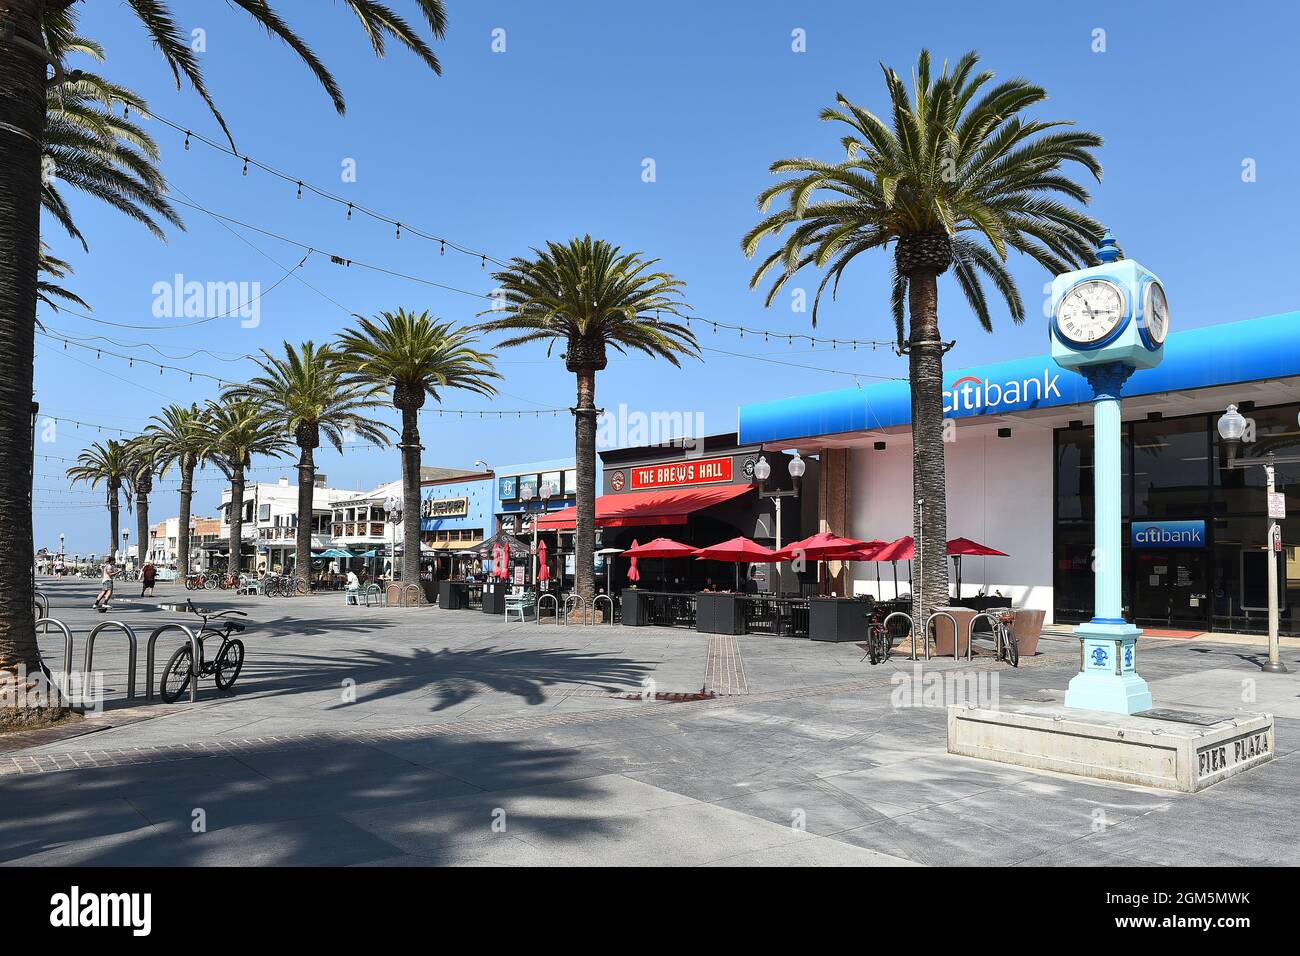 HERMOSA BEACH, KALIFORNIEN - 15. SEPTEMBER 2021: Der Pier Plaza, eine Fußgängerzone, die zum Pier führt. Stockfoto